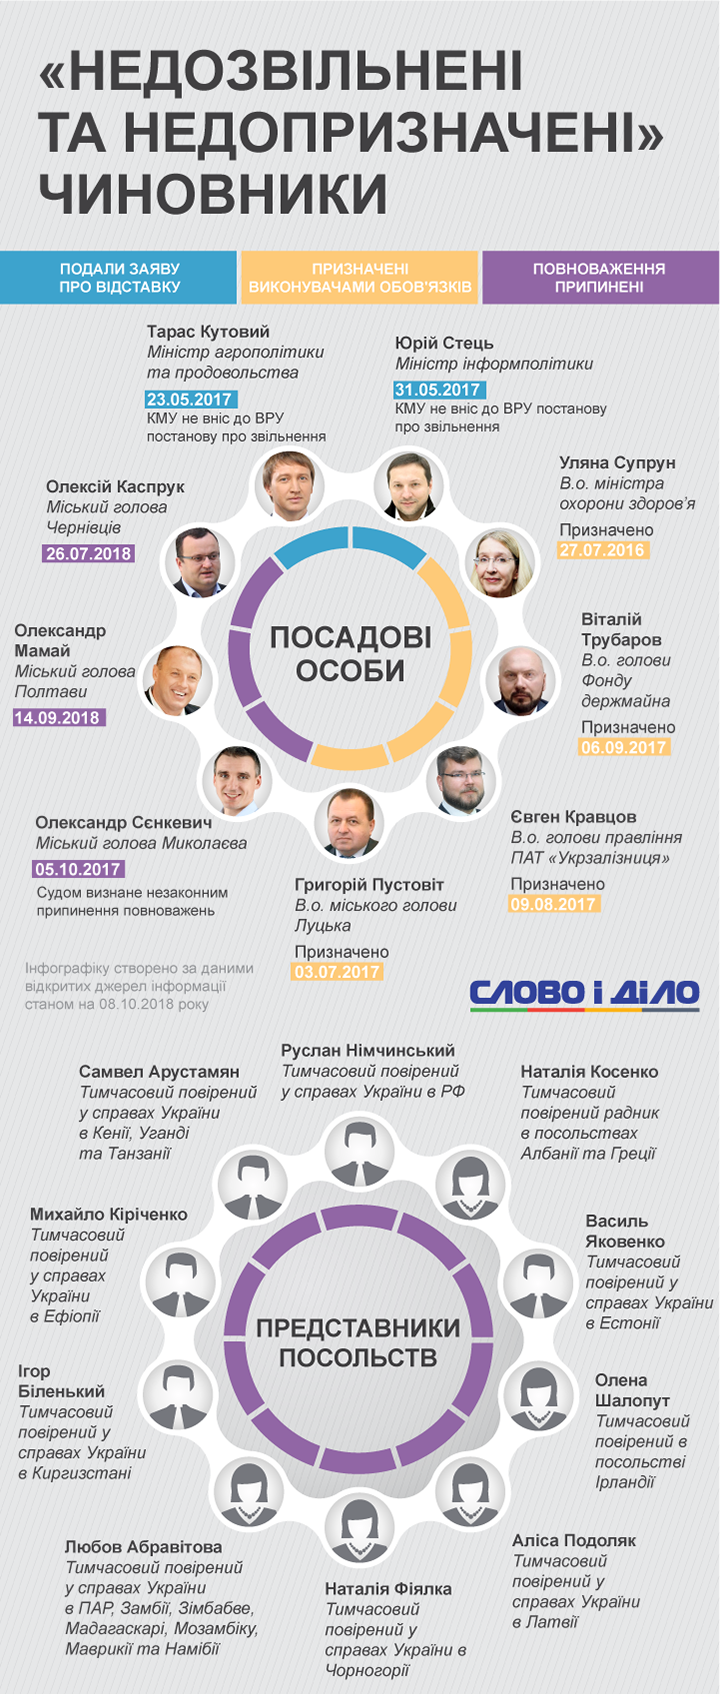 Кутовой и Стець более года ждут увольнения, Супрун два года никак не станет министром, а мэров Полтавы, Николаева и Черновцов отстранили депутаты.